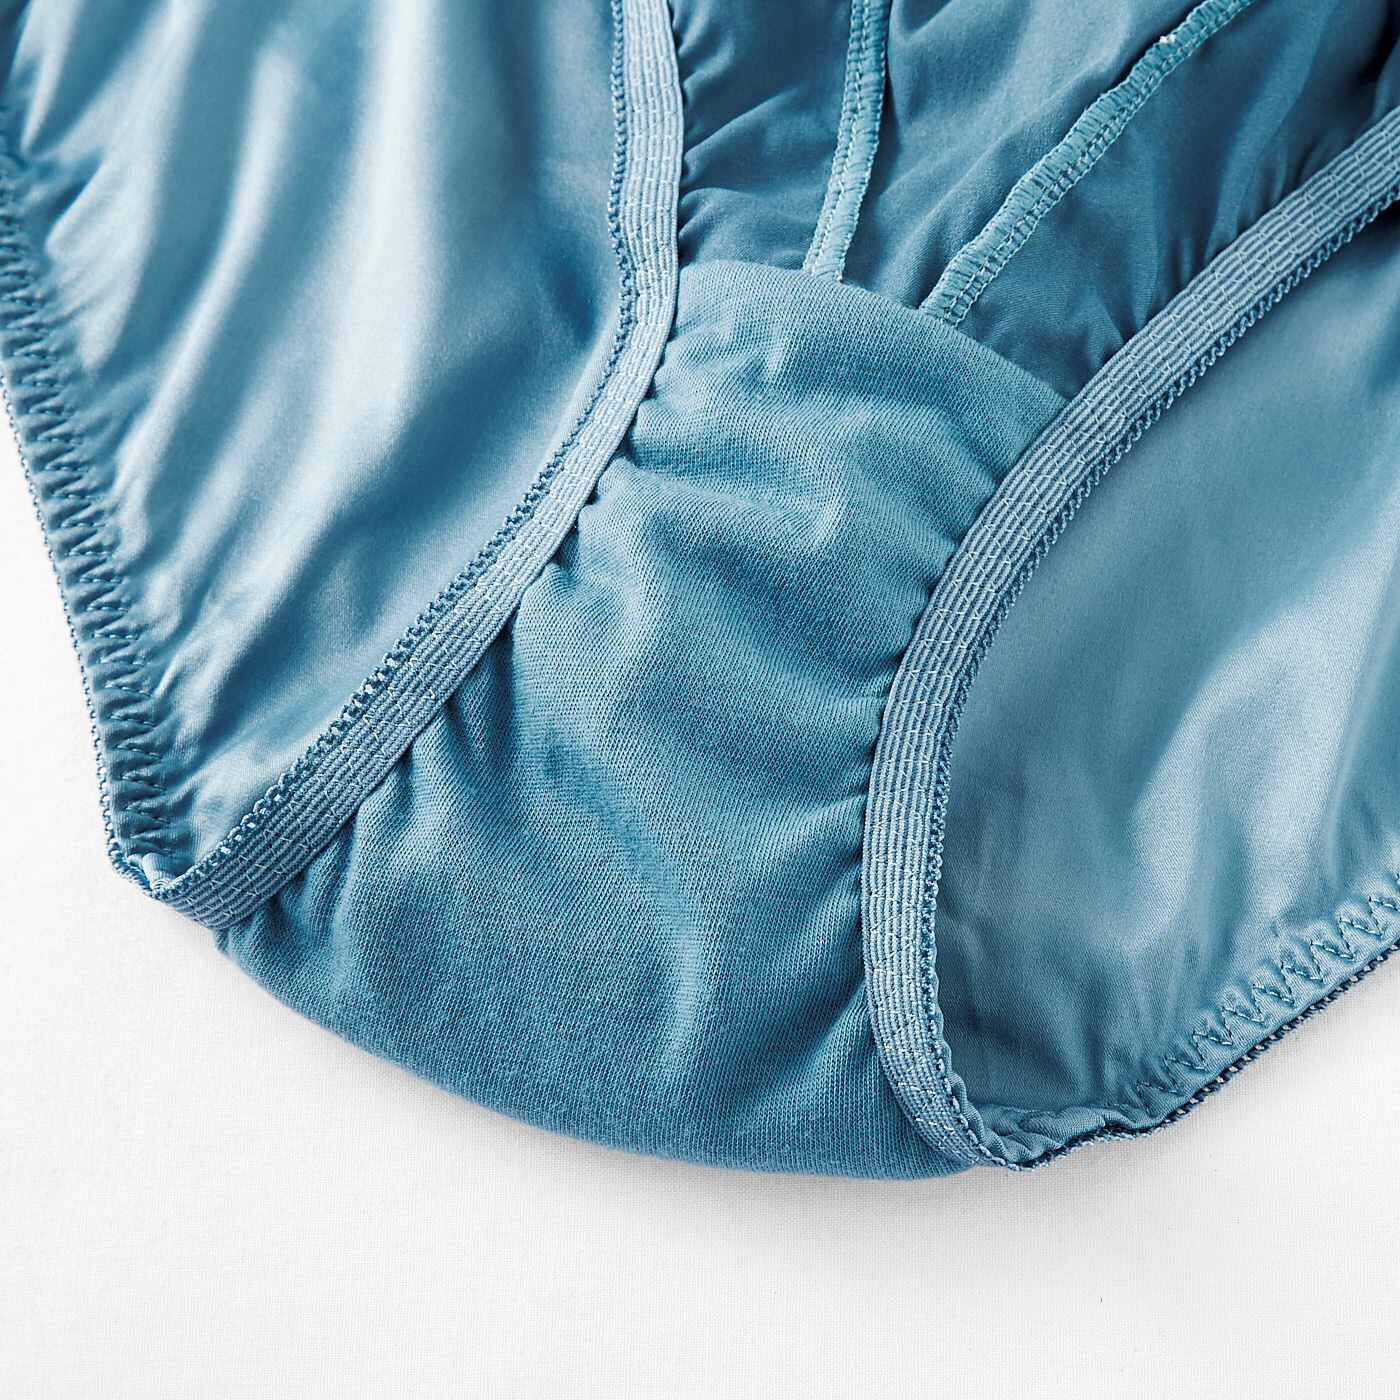 flufeel|flufeel×ミュージアム部　ロココ時代の名画を体験　マリー・アントワネットのドレスをイメージしたブラ＆ショーツ|ショーツのまた部分は綿混素材を使用しています。